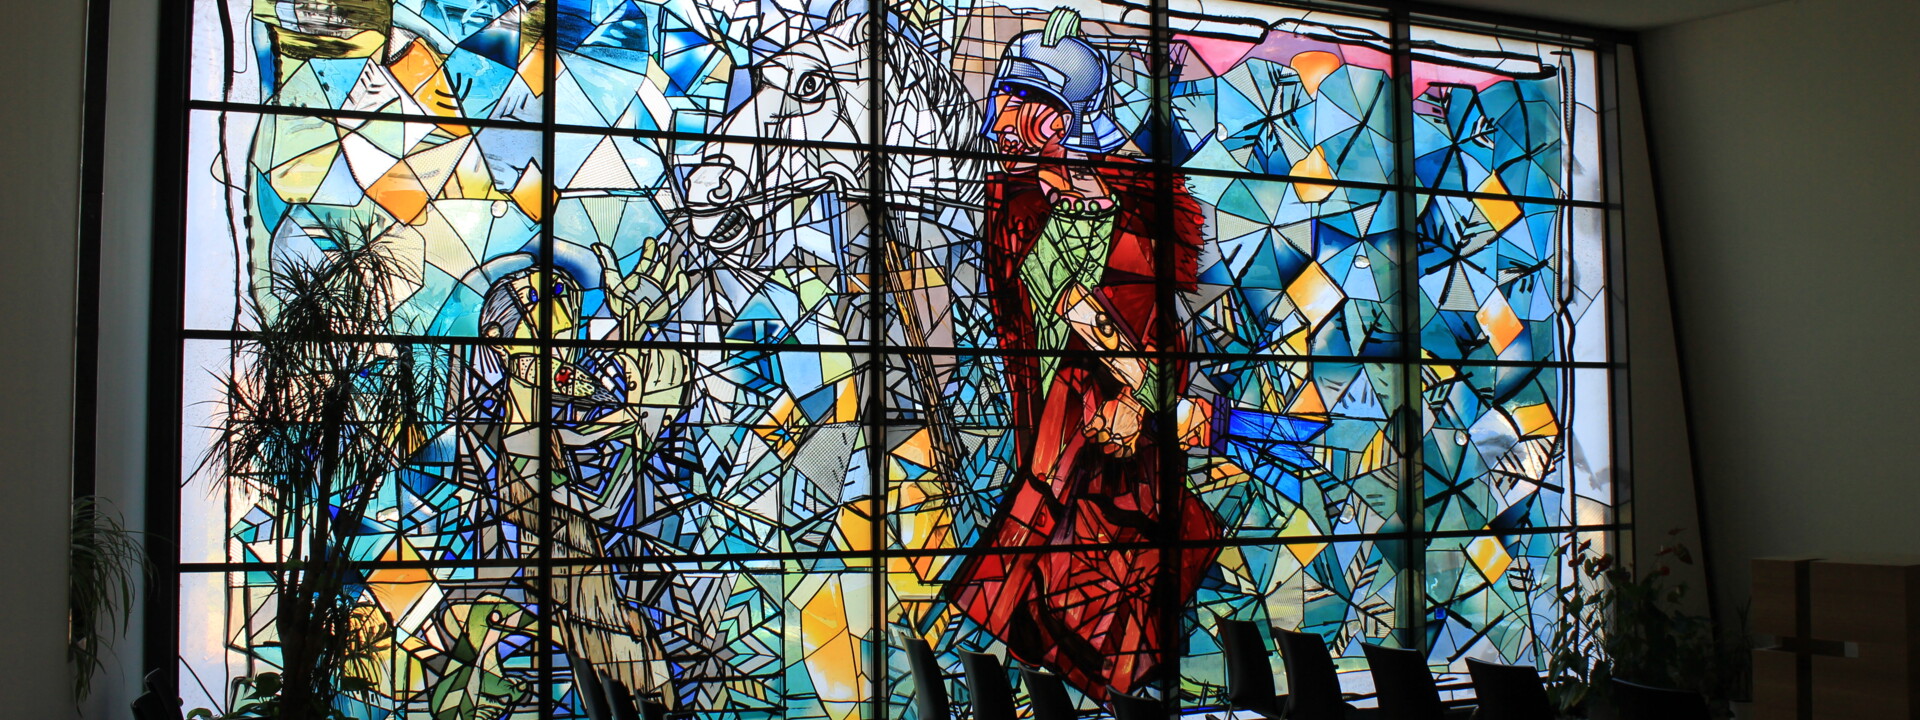 Glasmalerei in der Kapelle St. Martin mit Reihenbestühlung ©Koblenz-Touristik GmbH